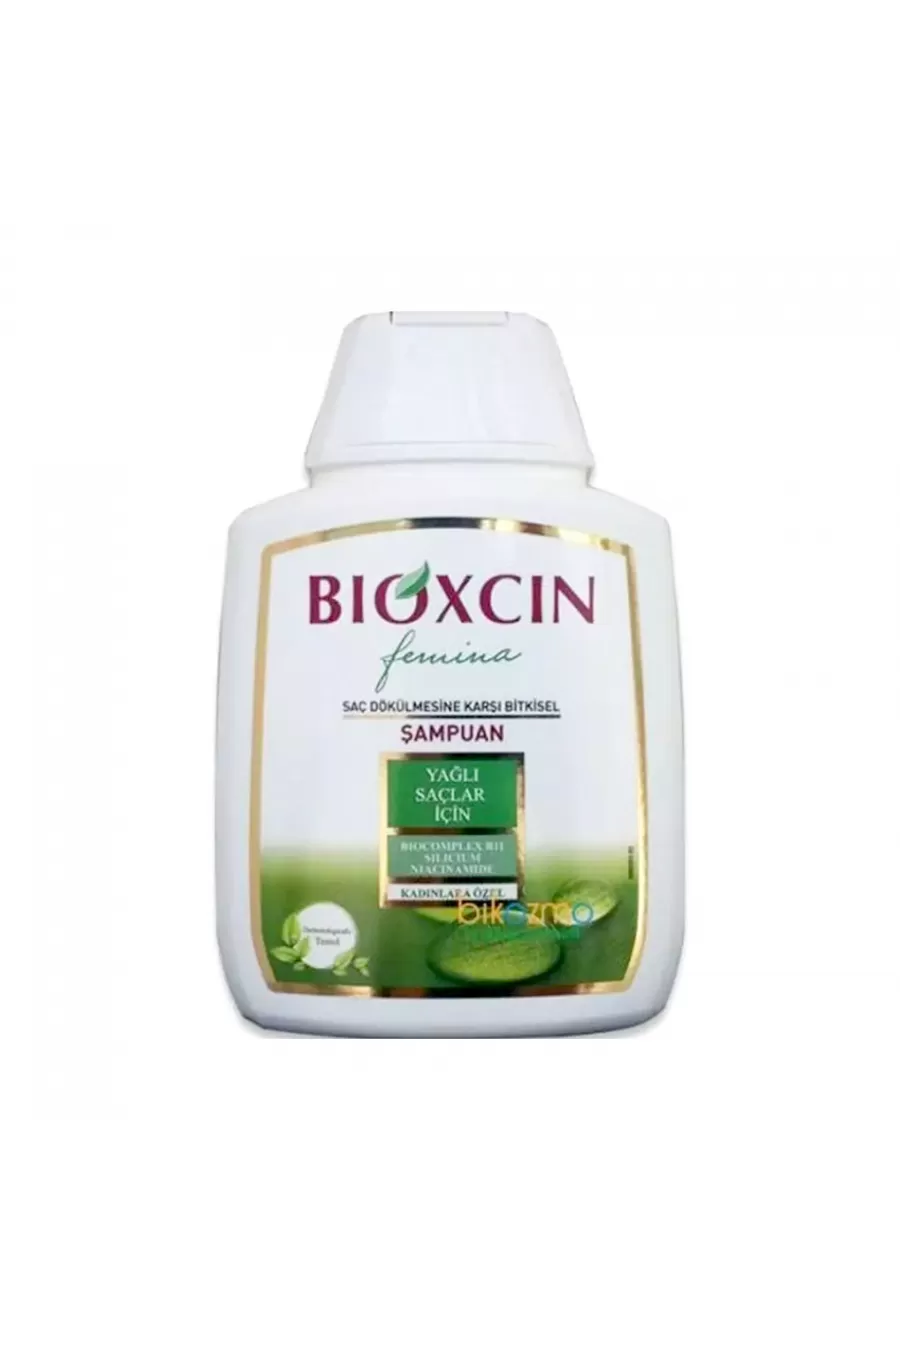 مناسب برای موهای چرب،تغذیه و تقویت کننده مو،تقویت کننده فولیکول مو بیوکسین BIOXCIN شامپو ضد ریزش